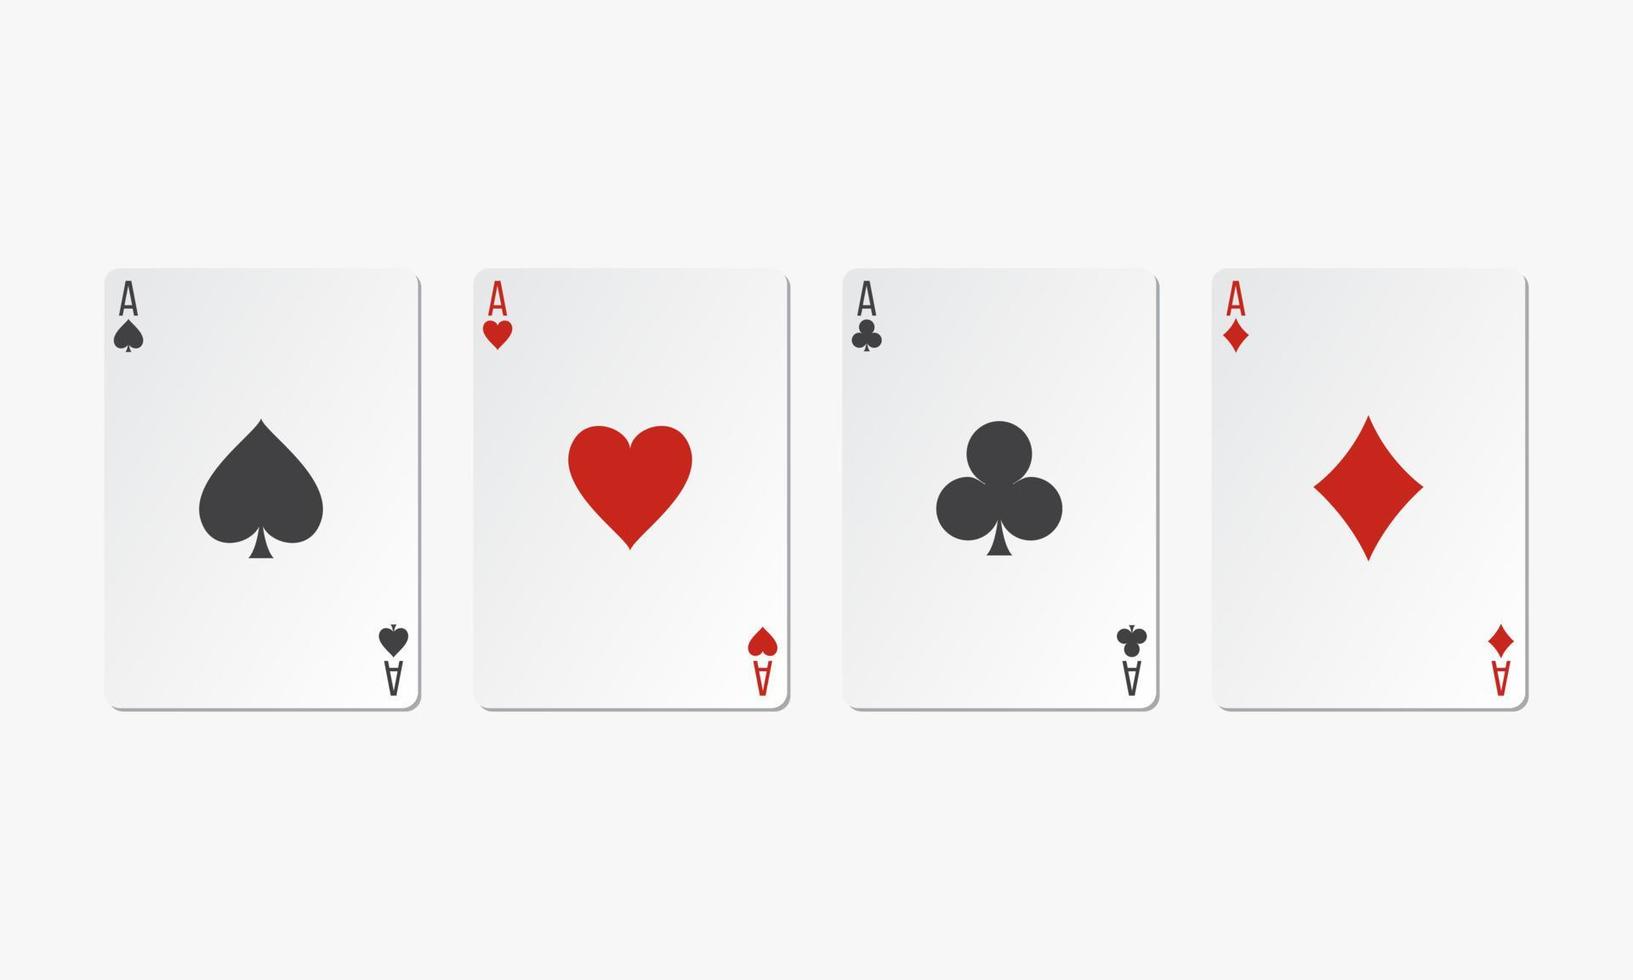 quatro cartas de jogar ace. ilustração em vetor jogo de cartas.